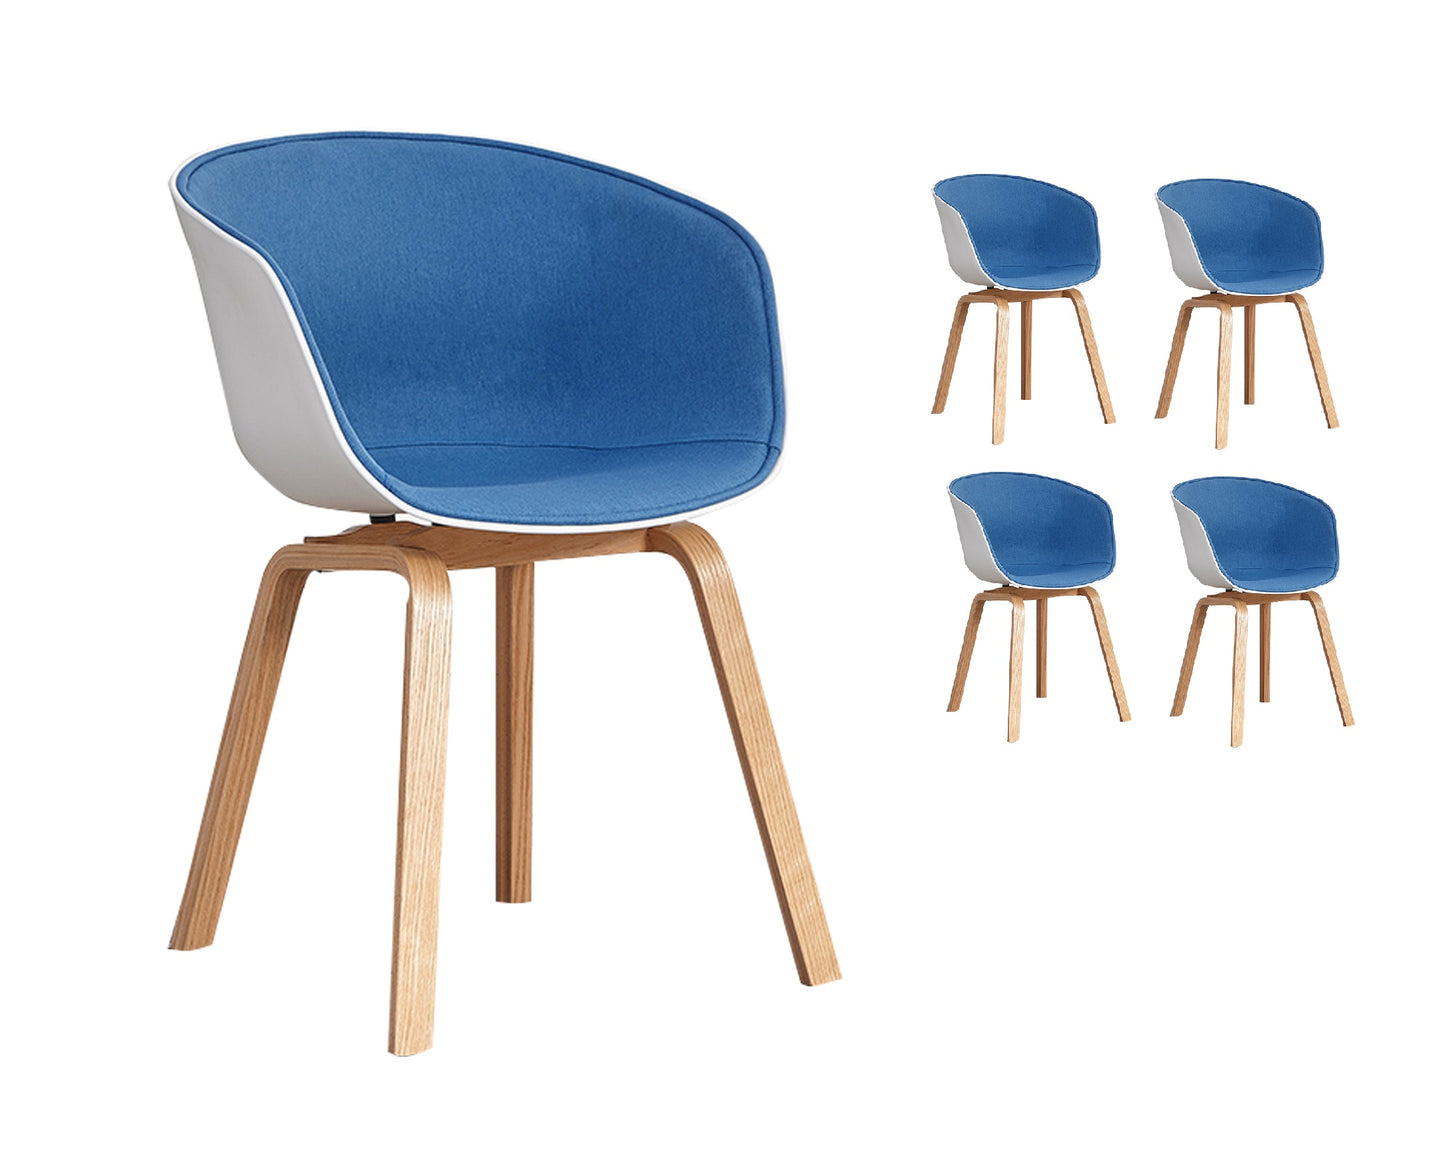 Lot de 4 chaises scandinaves très confortables avec coque en résine blanche revêtue d'un tissu moelleux bleu et des pieds bois